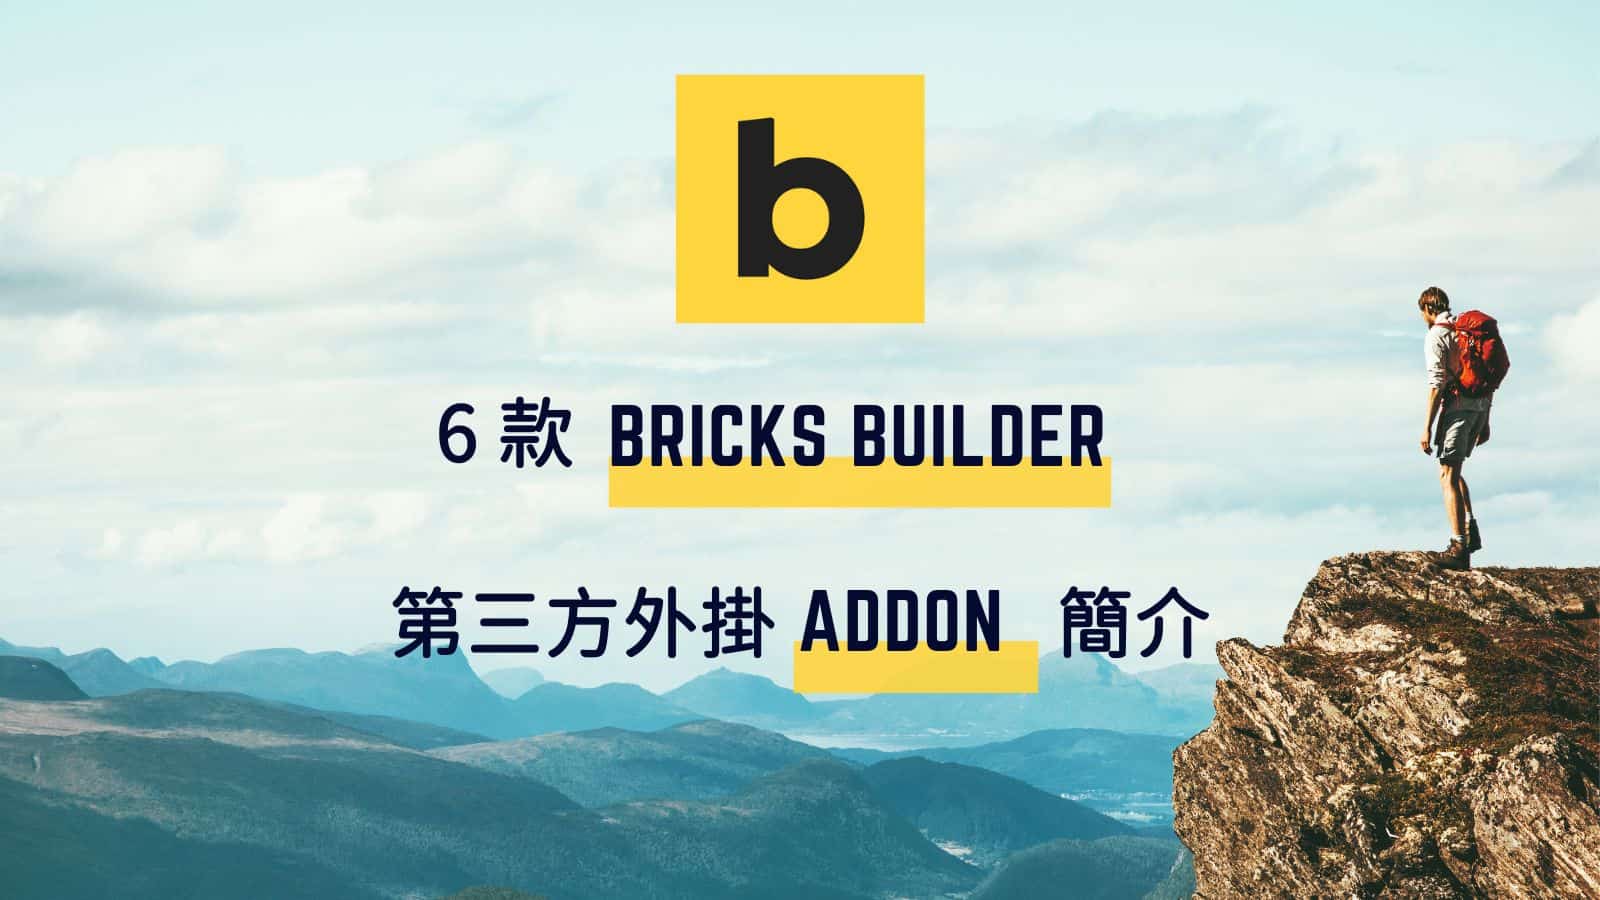 Bricks Builder Addon 介紹